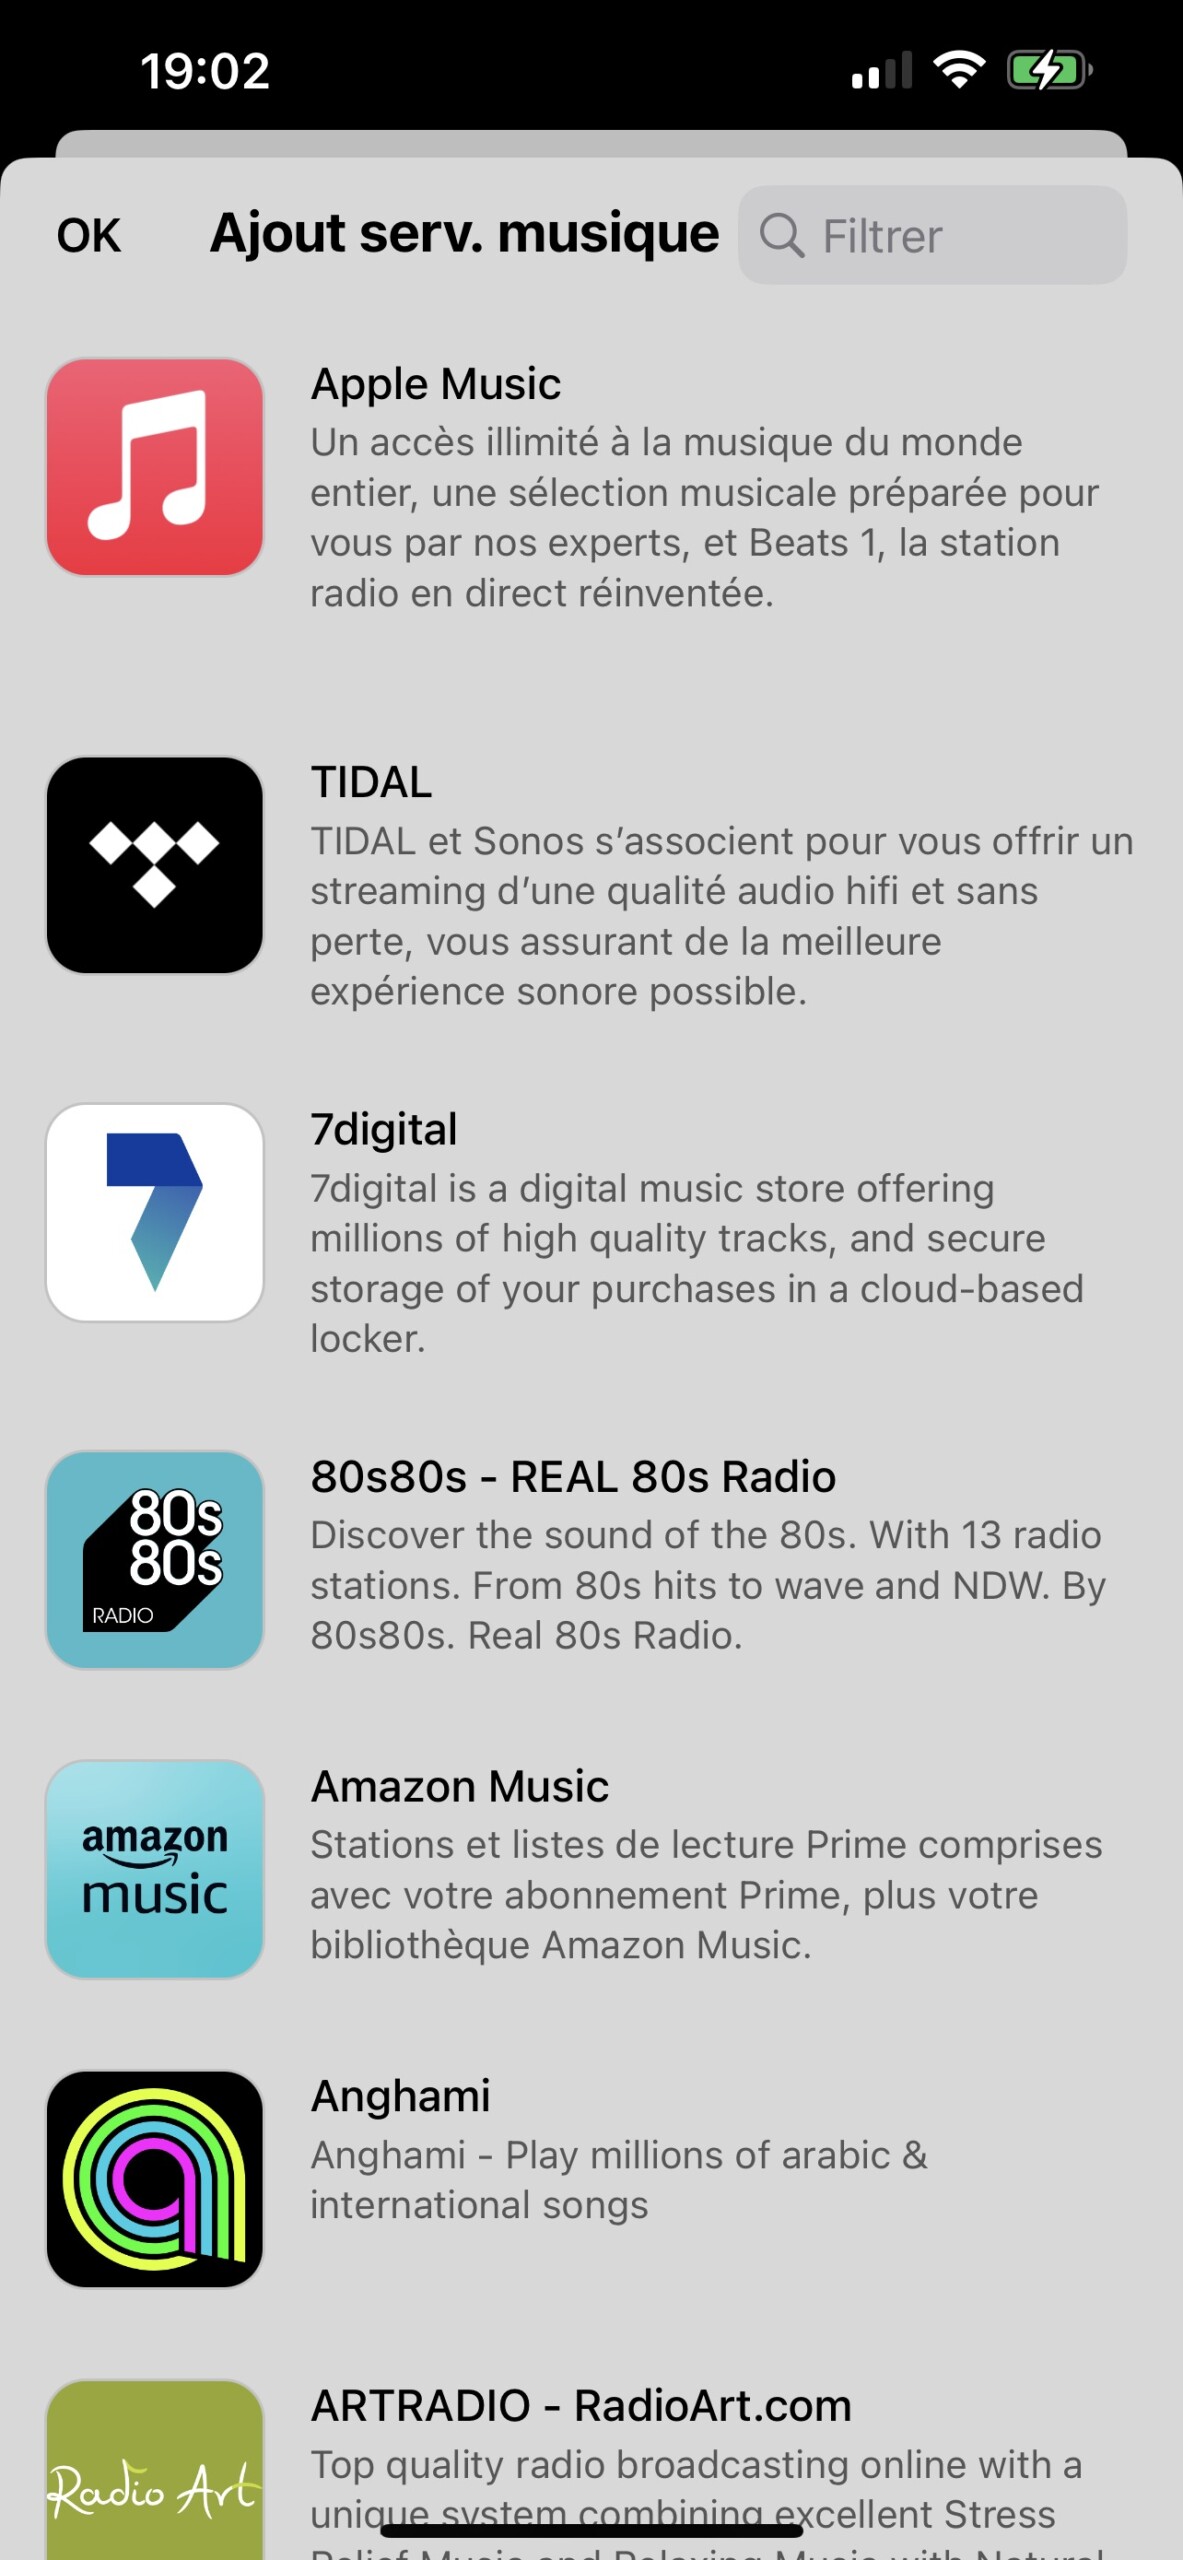 De nombreux services de musique sont recensés dans l'app Sonos.